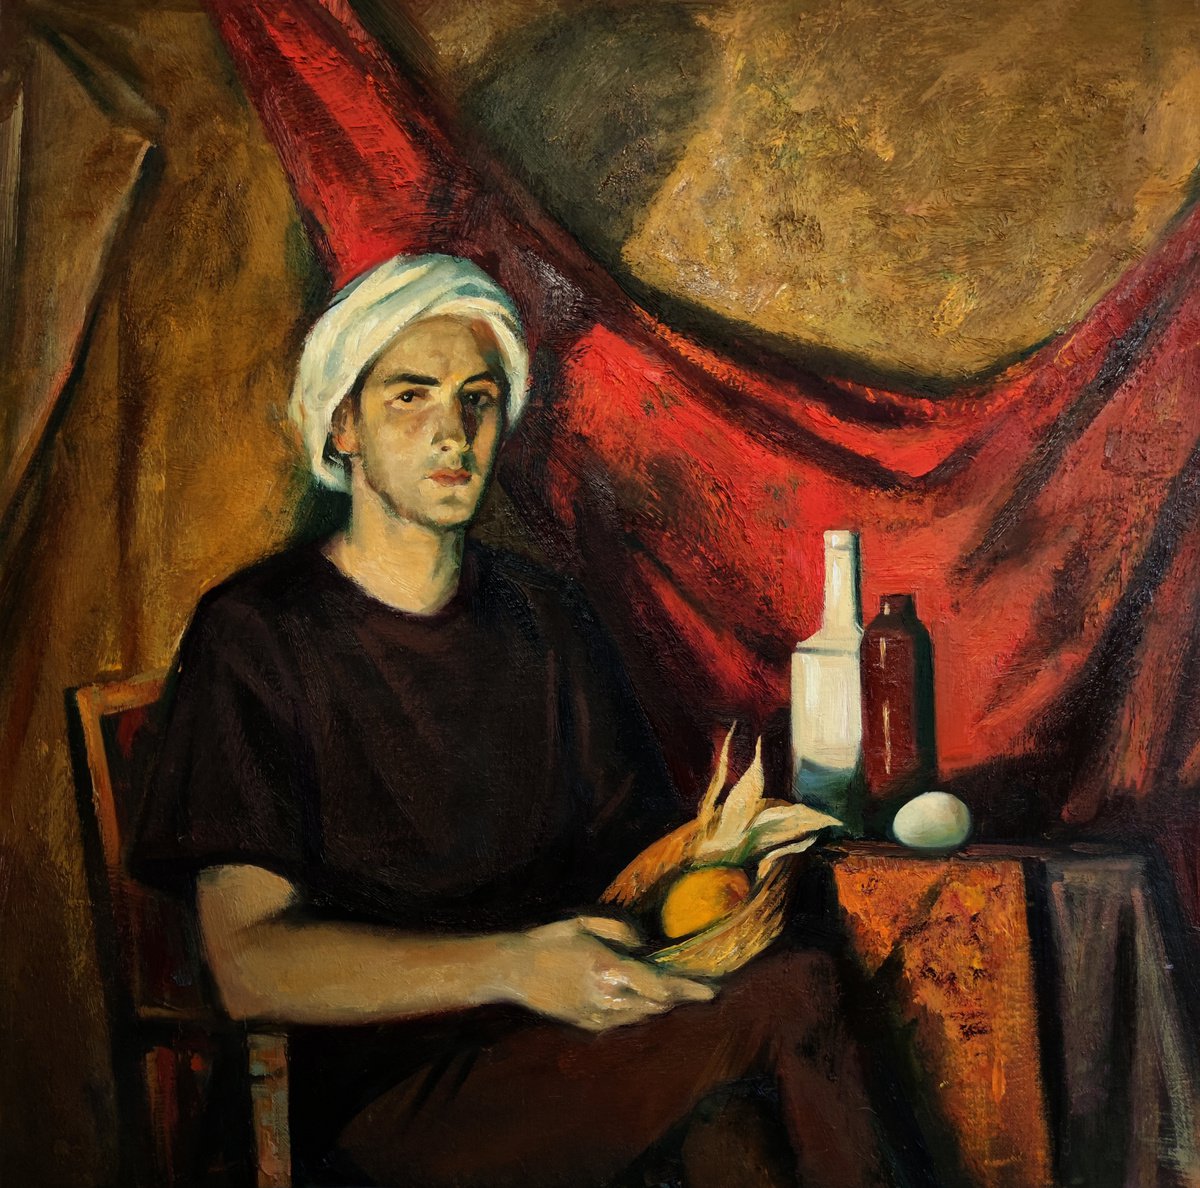 Man in a turban by Maria Egorova